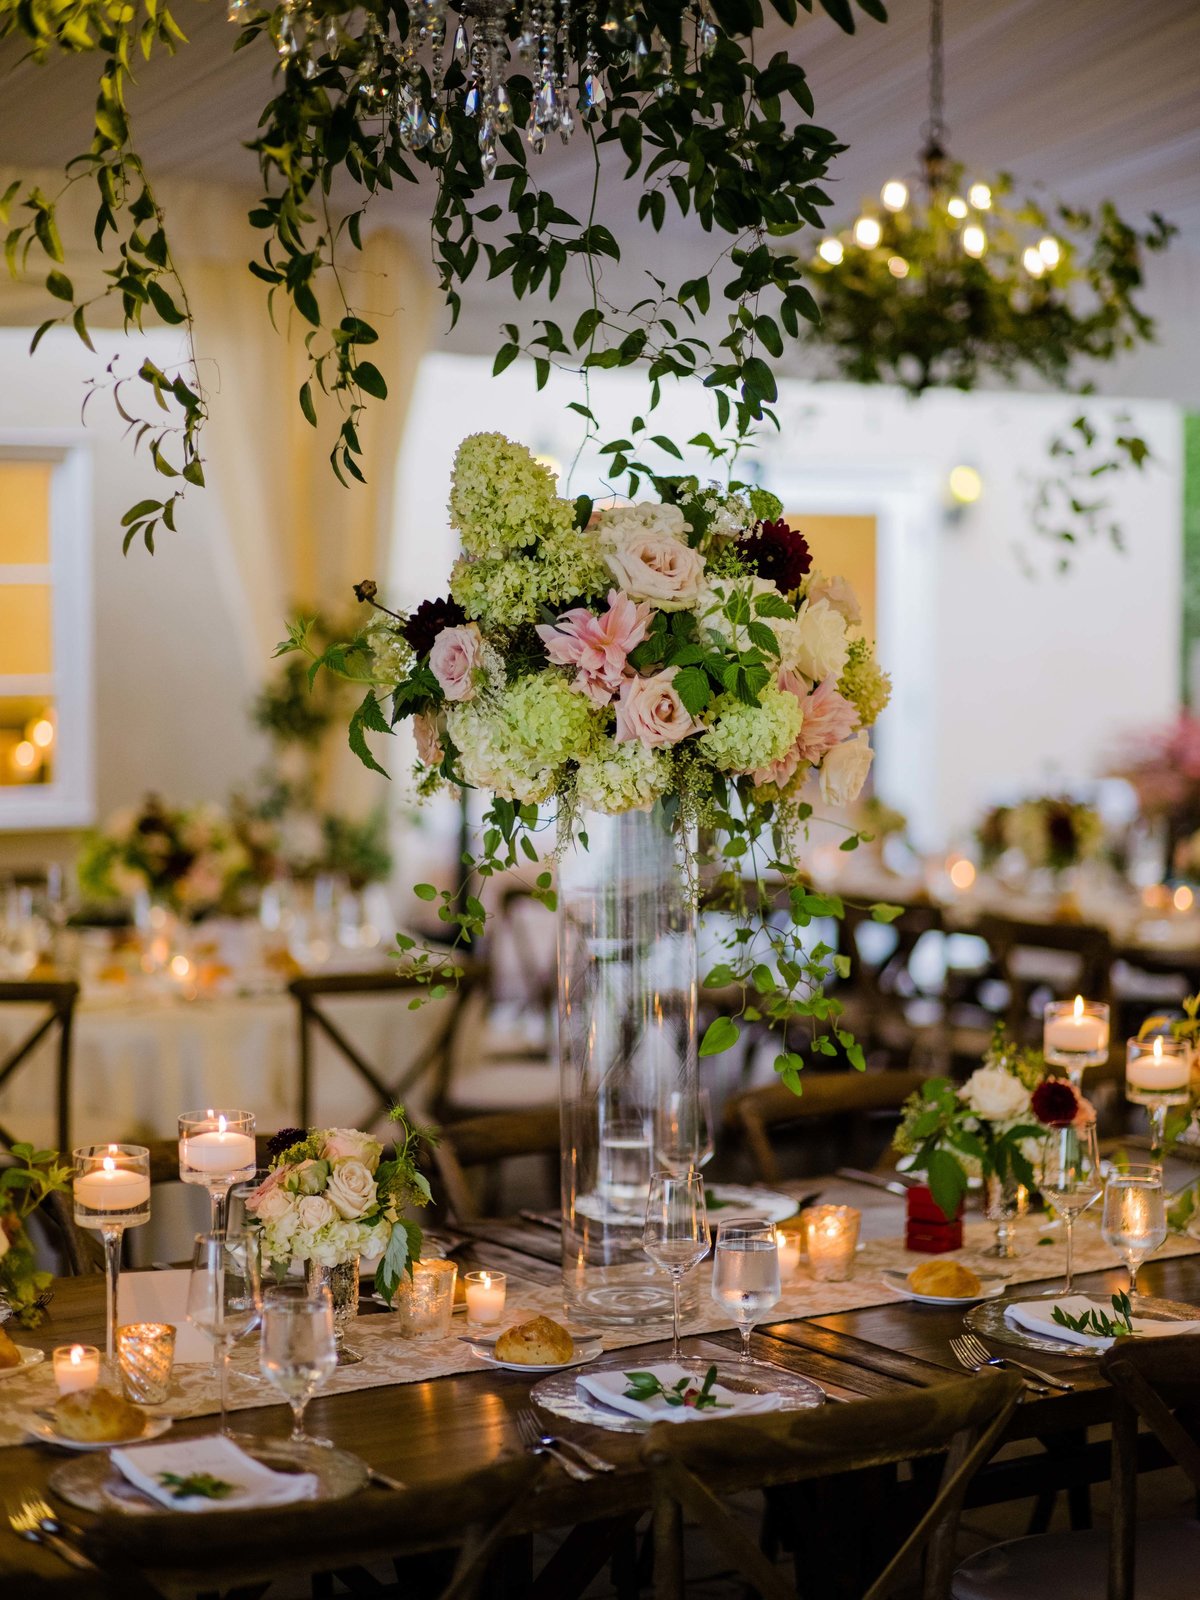 Flora Nova design created this summer garden wedding using hundreds of Cafe au lait Dahlias, one of our favorite flowers.